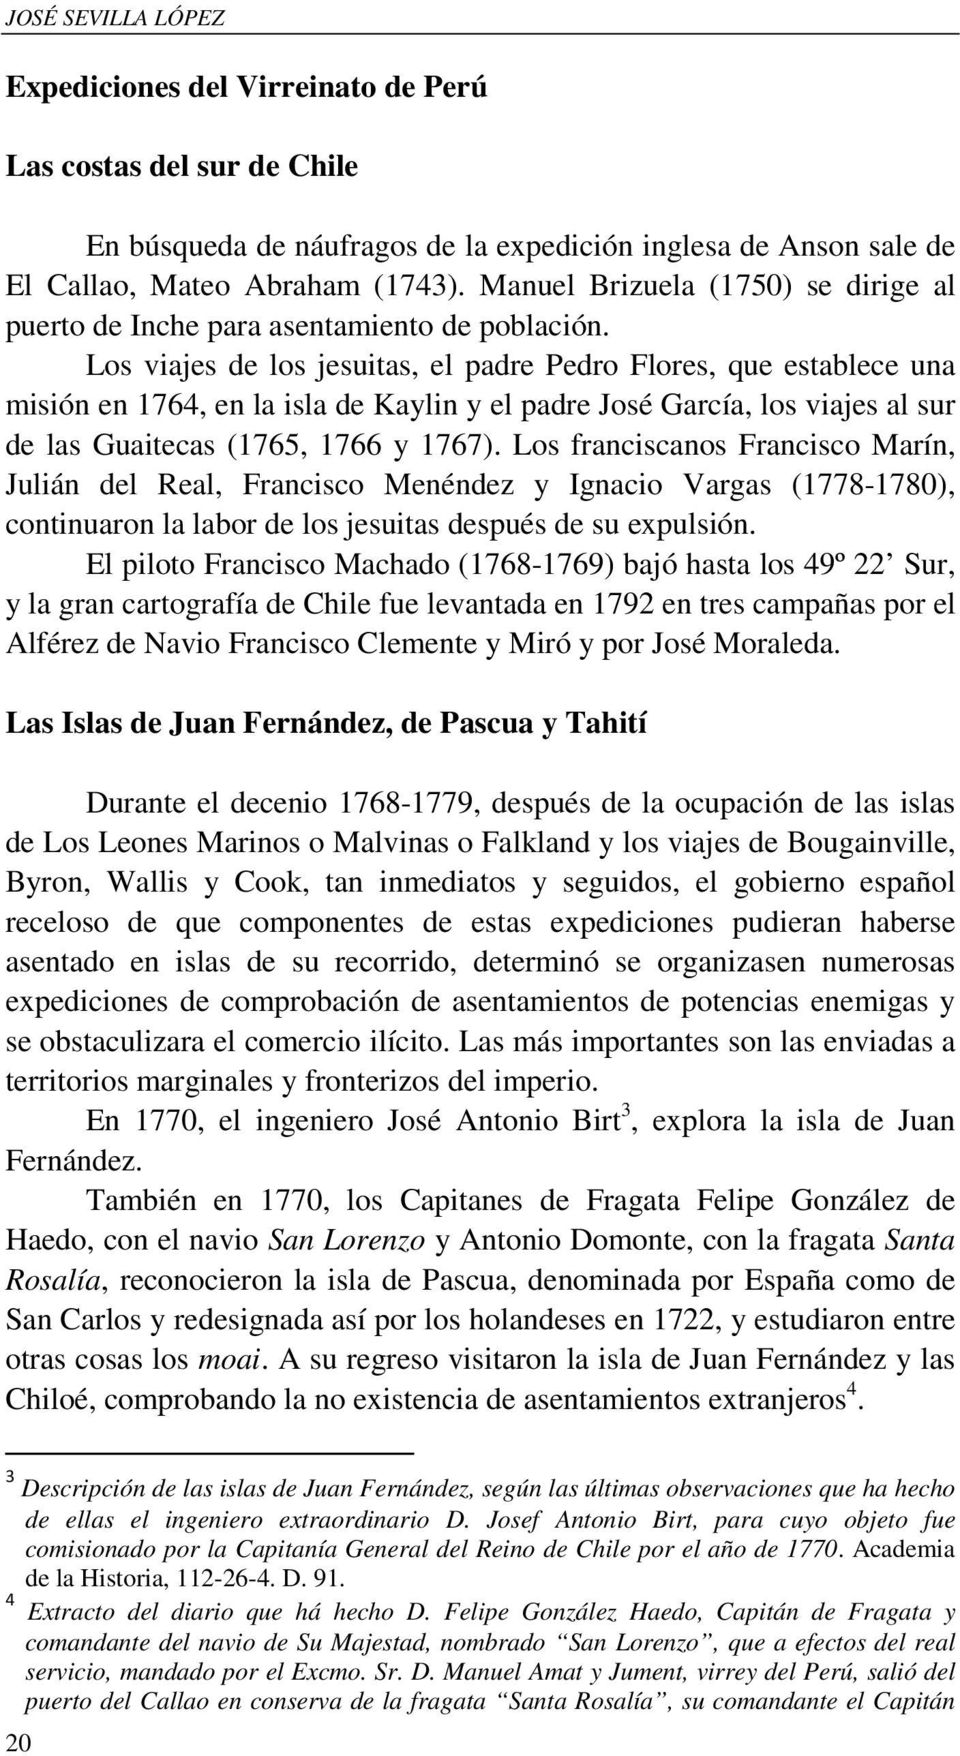 Los viajes de los jesuitas, el padre Pedro Flores, que establece una misión en 1764, en la isla de Kaylin y el padre José García, los viajes al sur de las Guaitecas (1765, 1766 y 1767).